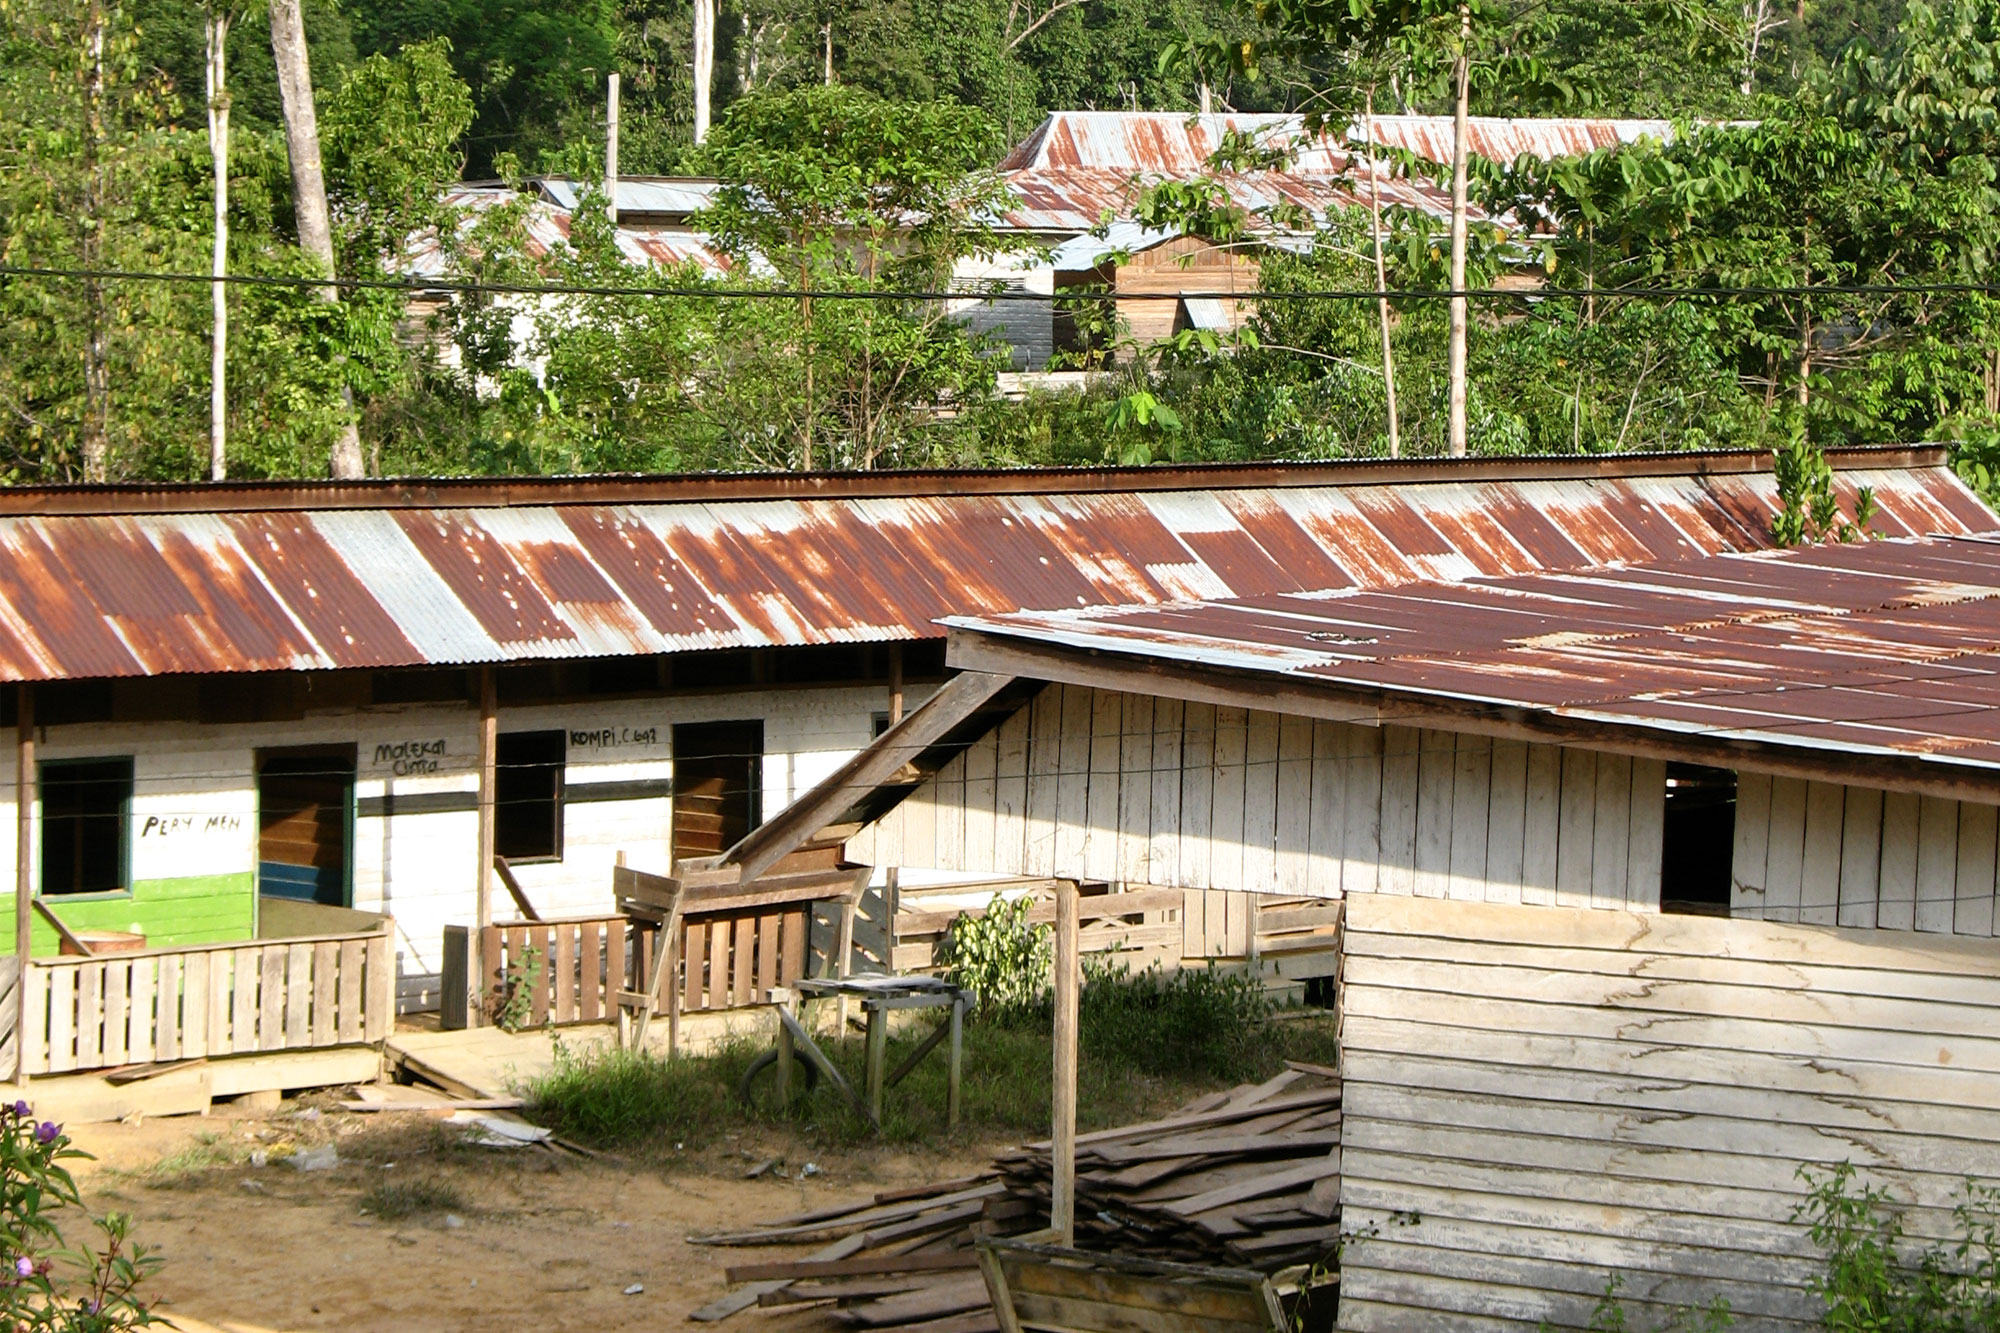 A small community amidst the Borneo jungle